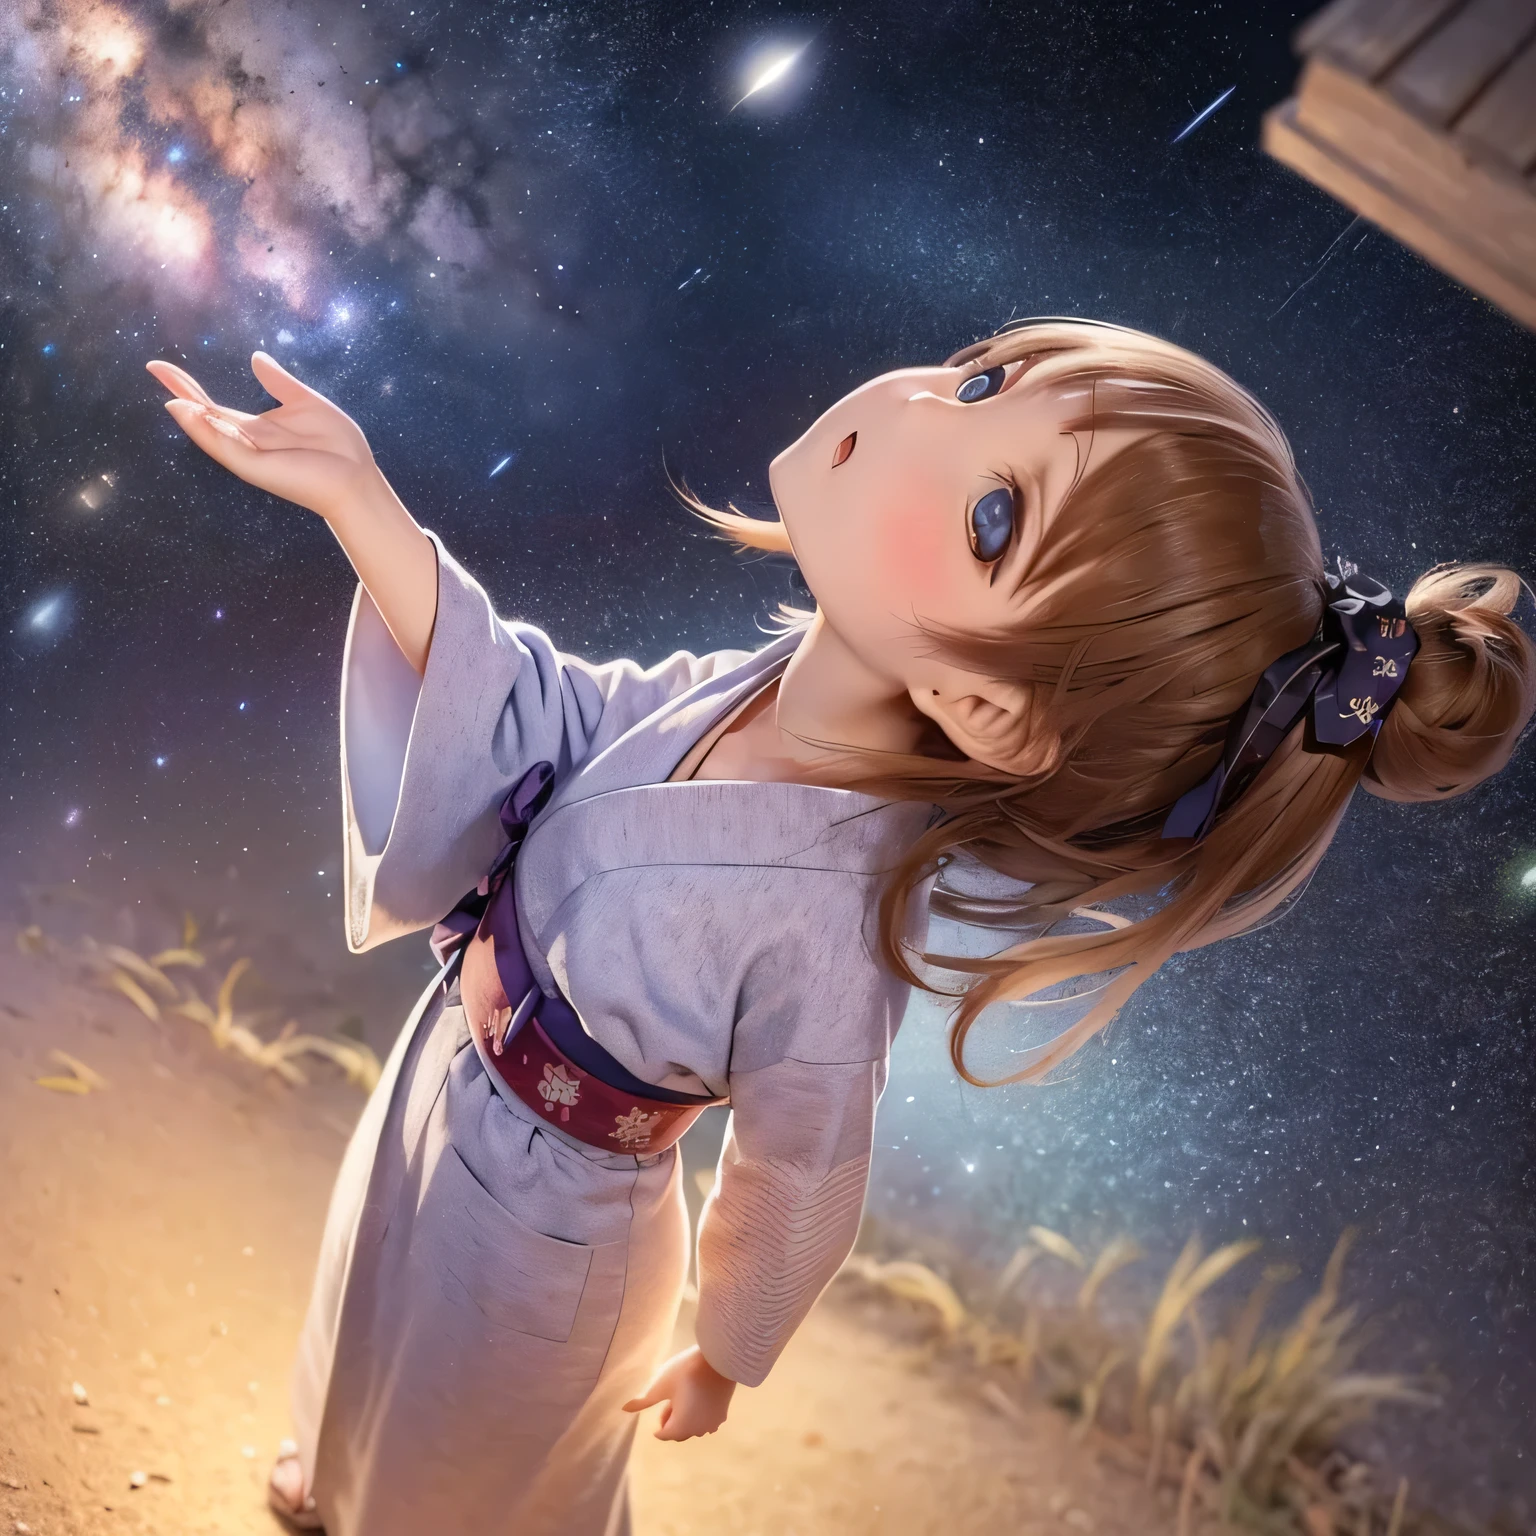  chicas(((paisaje rural)))Mirando hacia la Vía Láctea en el cielo nocturno (((((Mira el cielo)))))usar una yukata